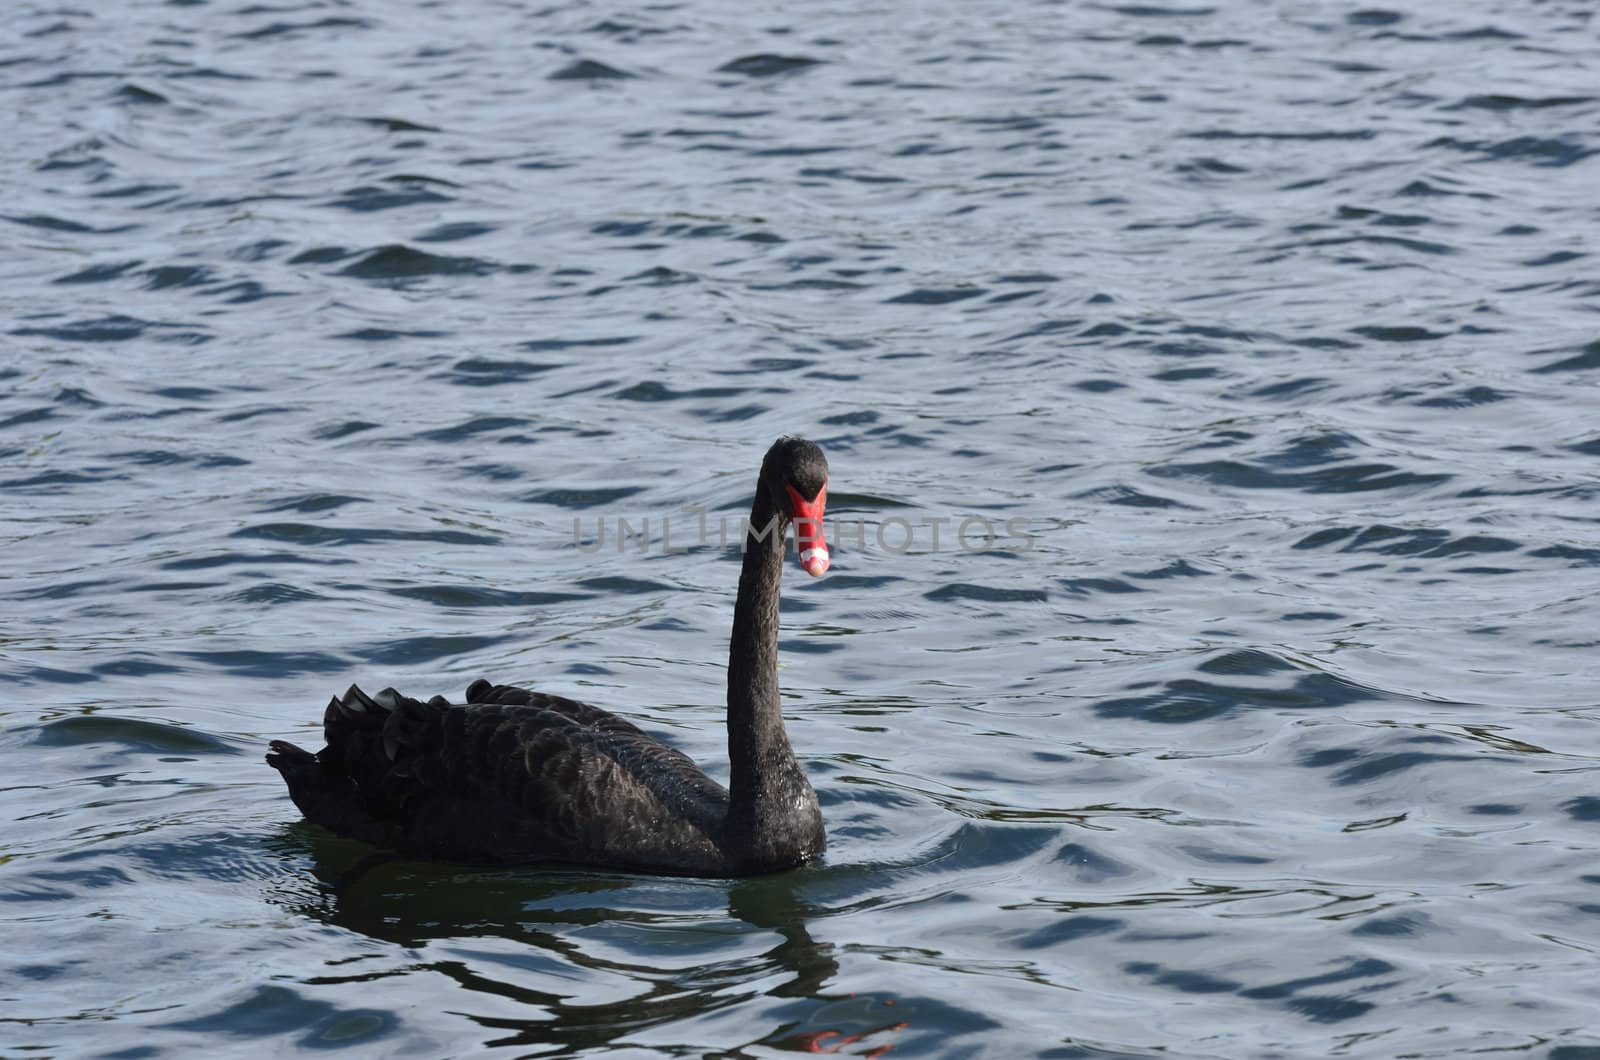 black swan by pauws99